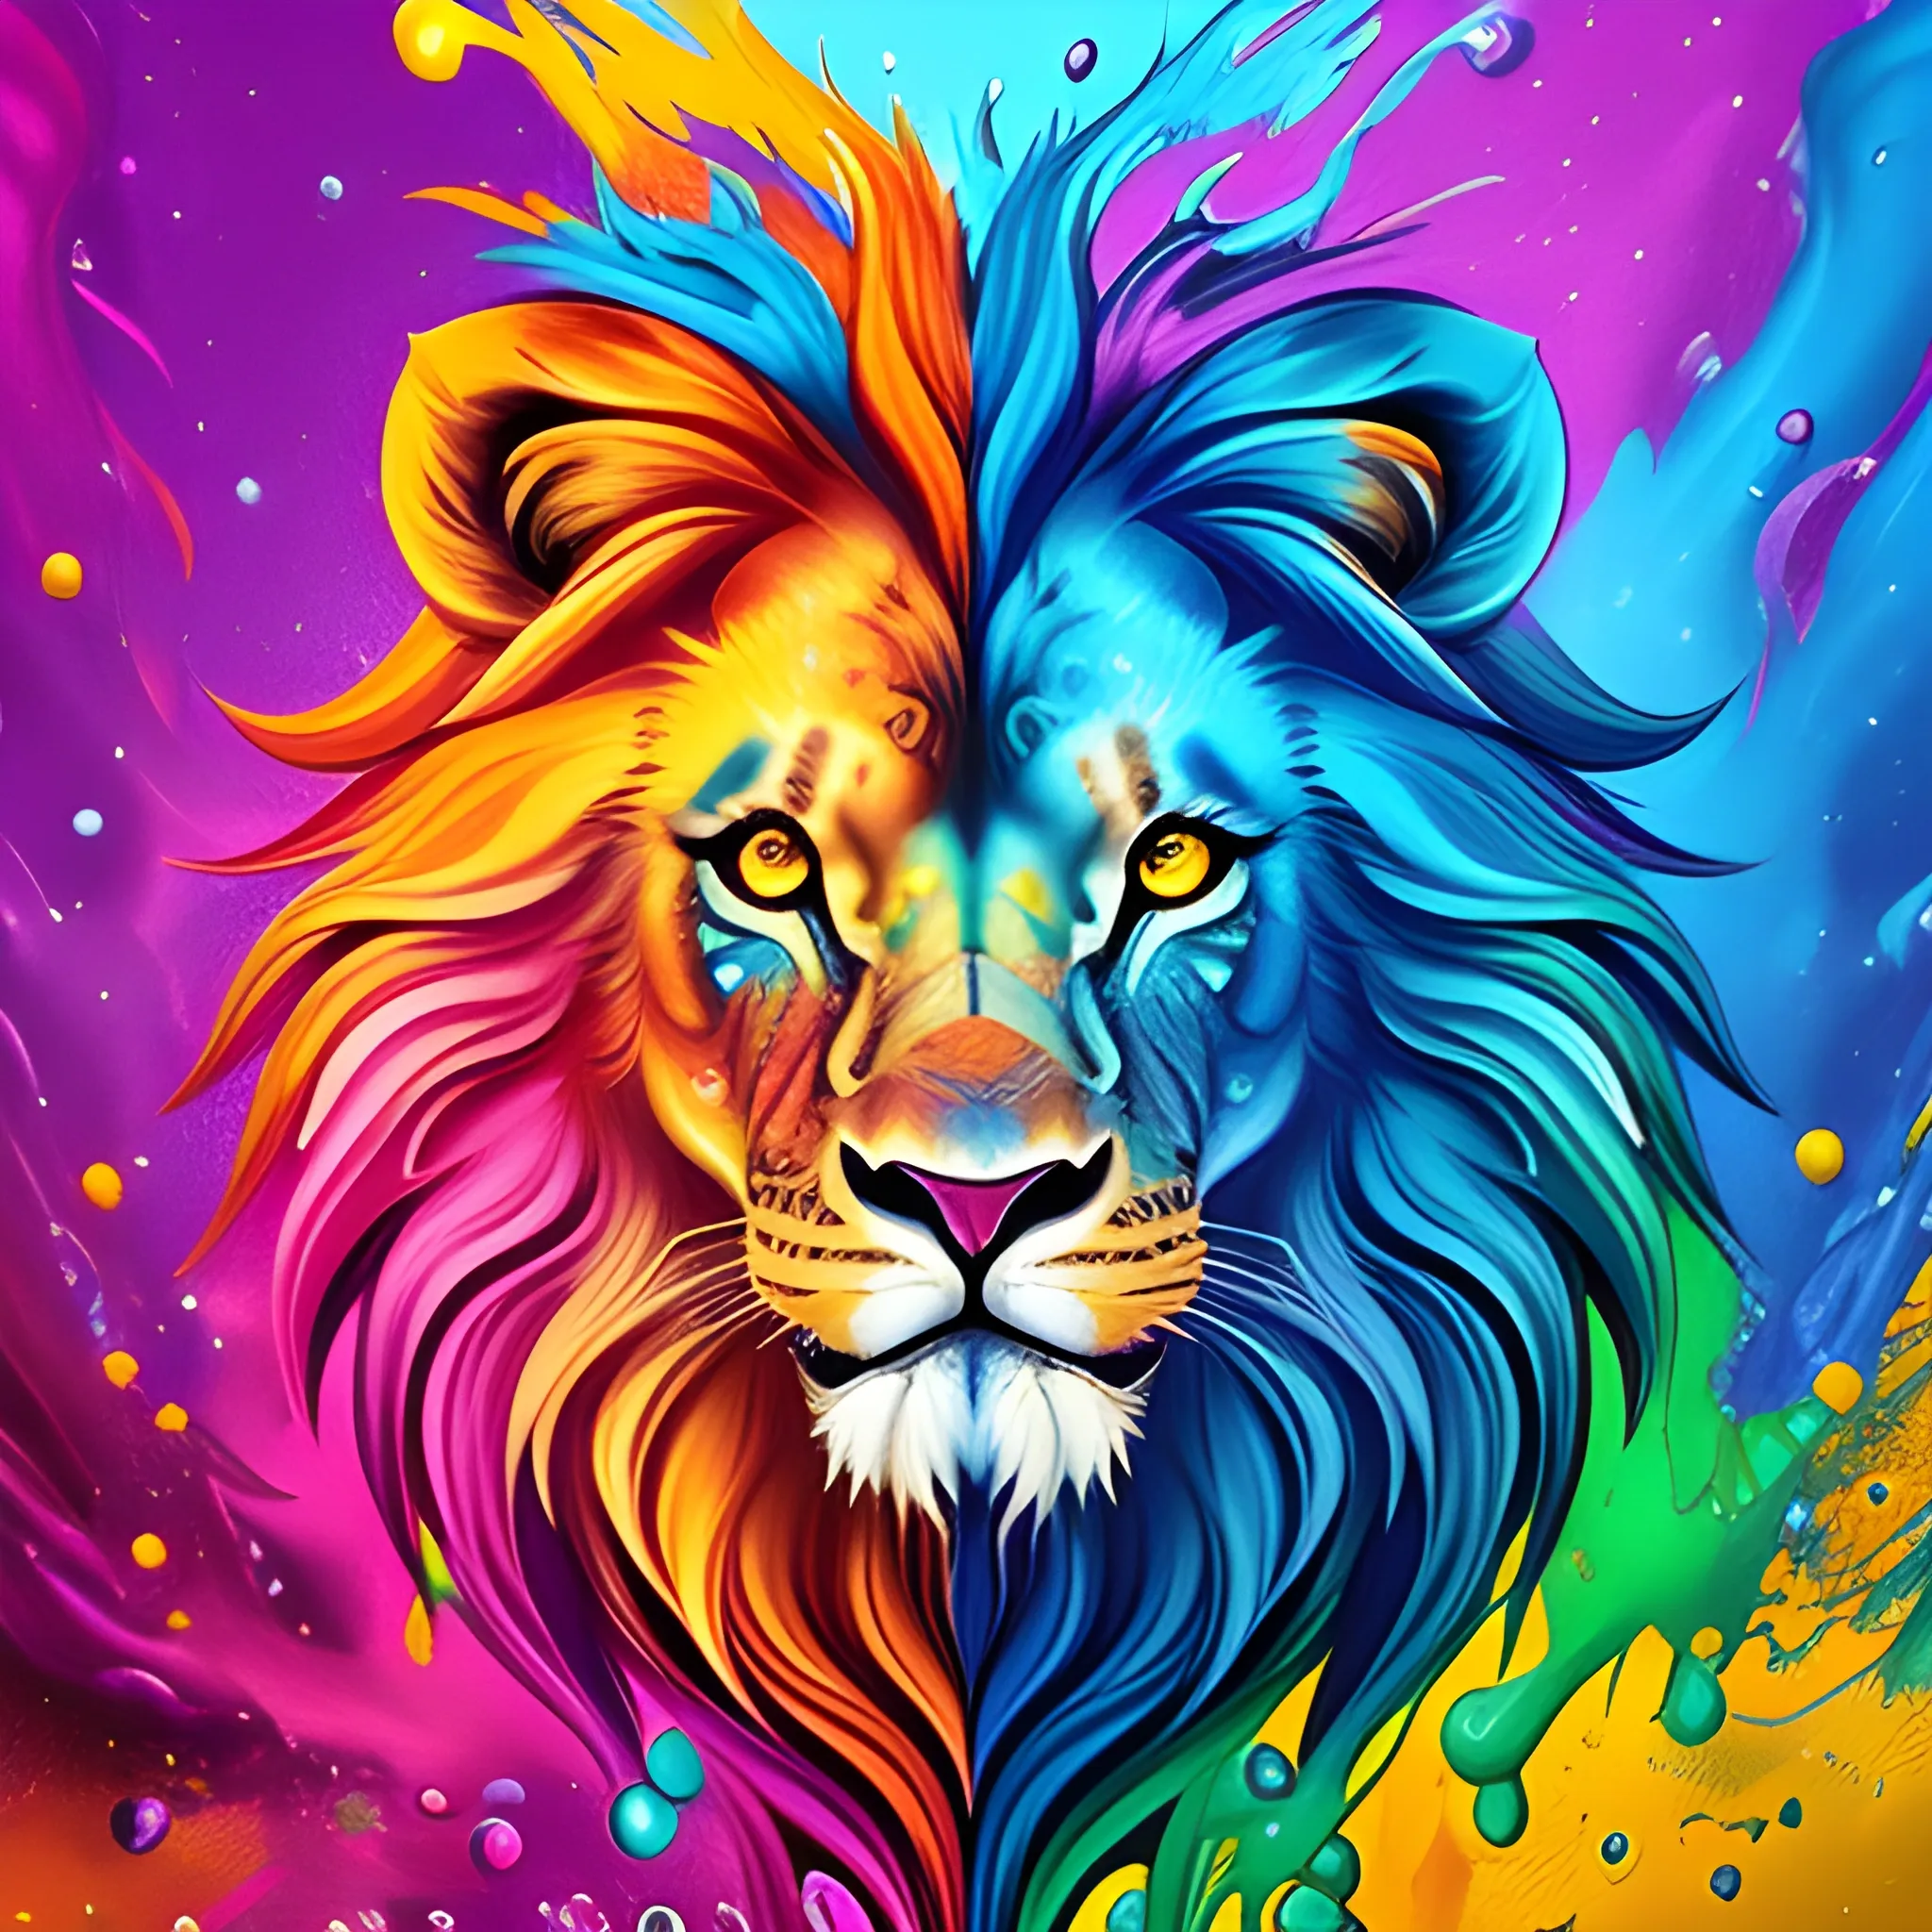 Colored Lion Canvas Artwork by Milos Karanovic | iCanvas